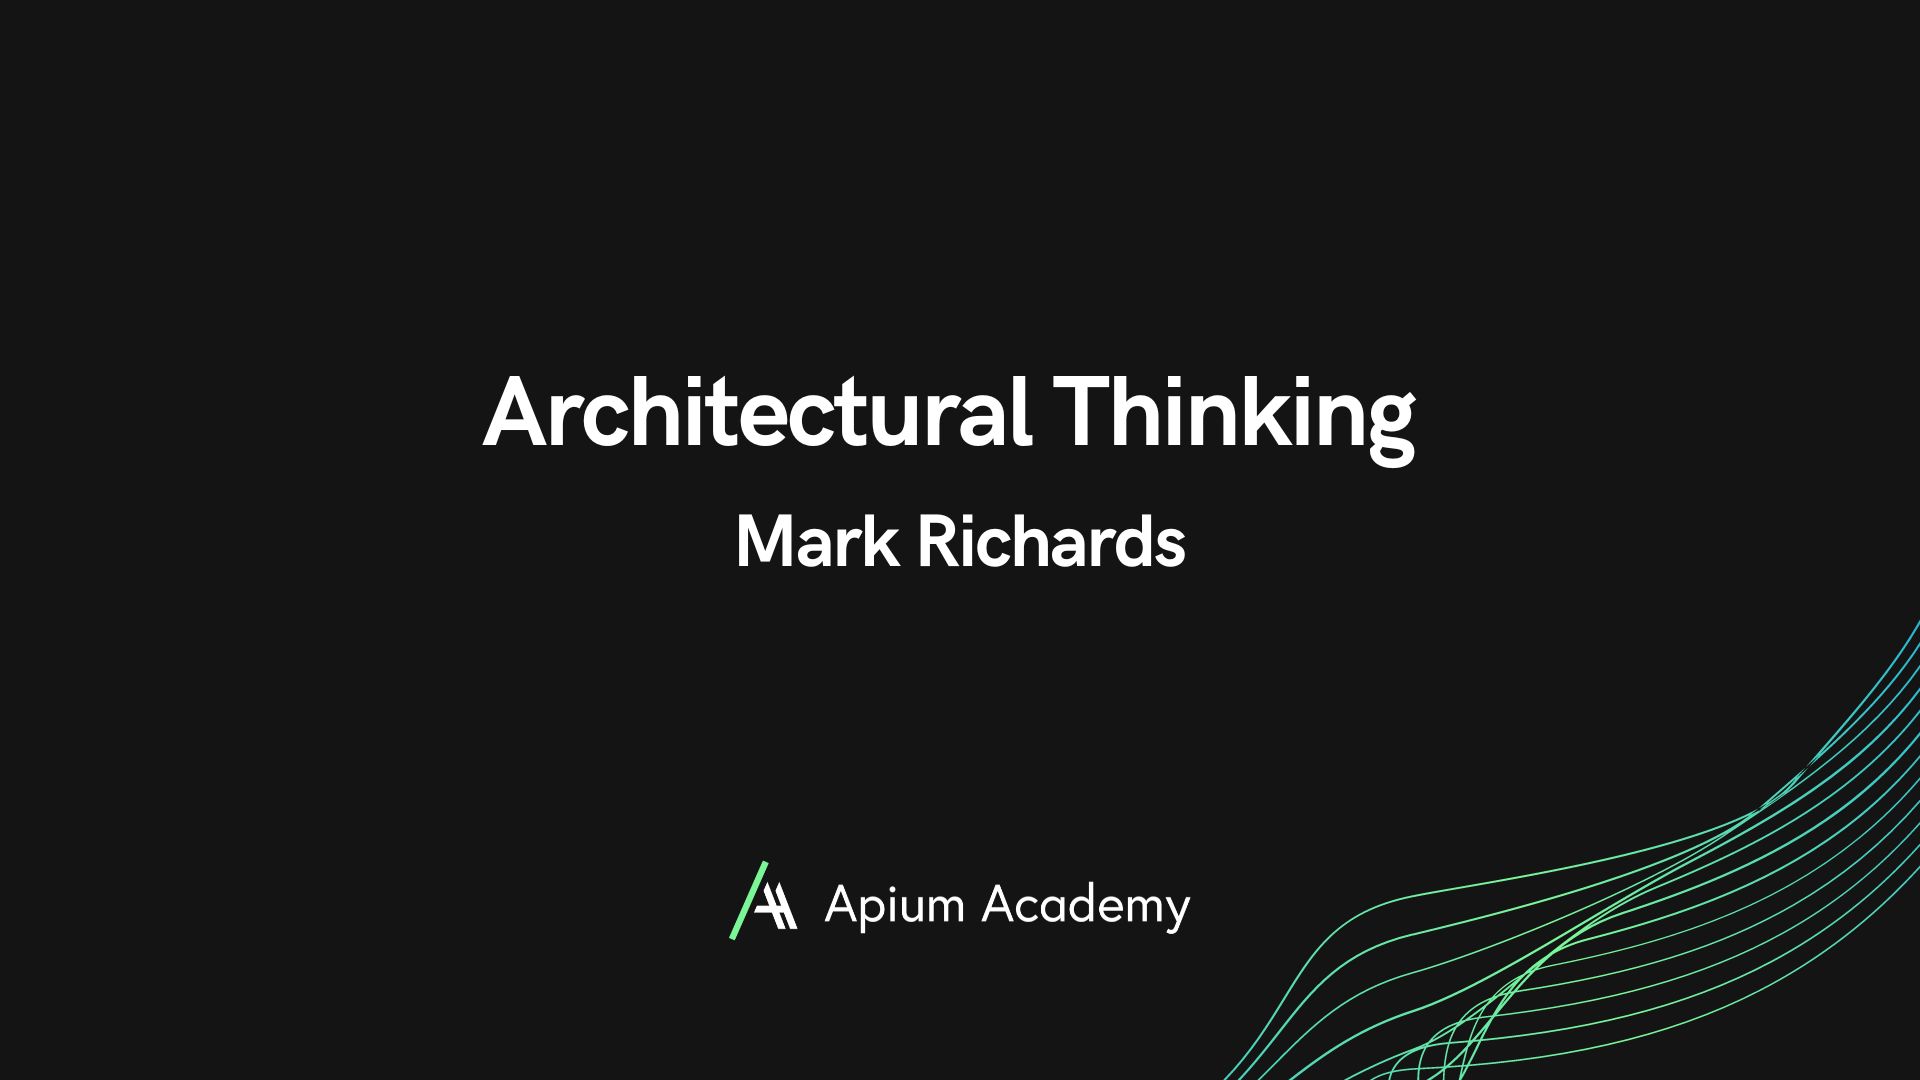 Architectural Thinking Workshop